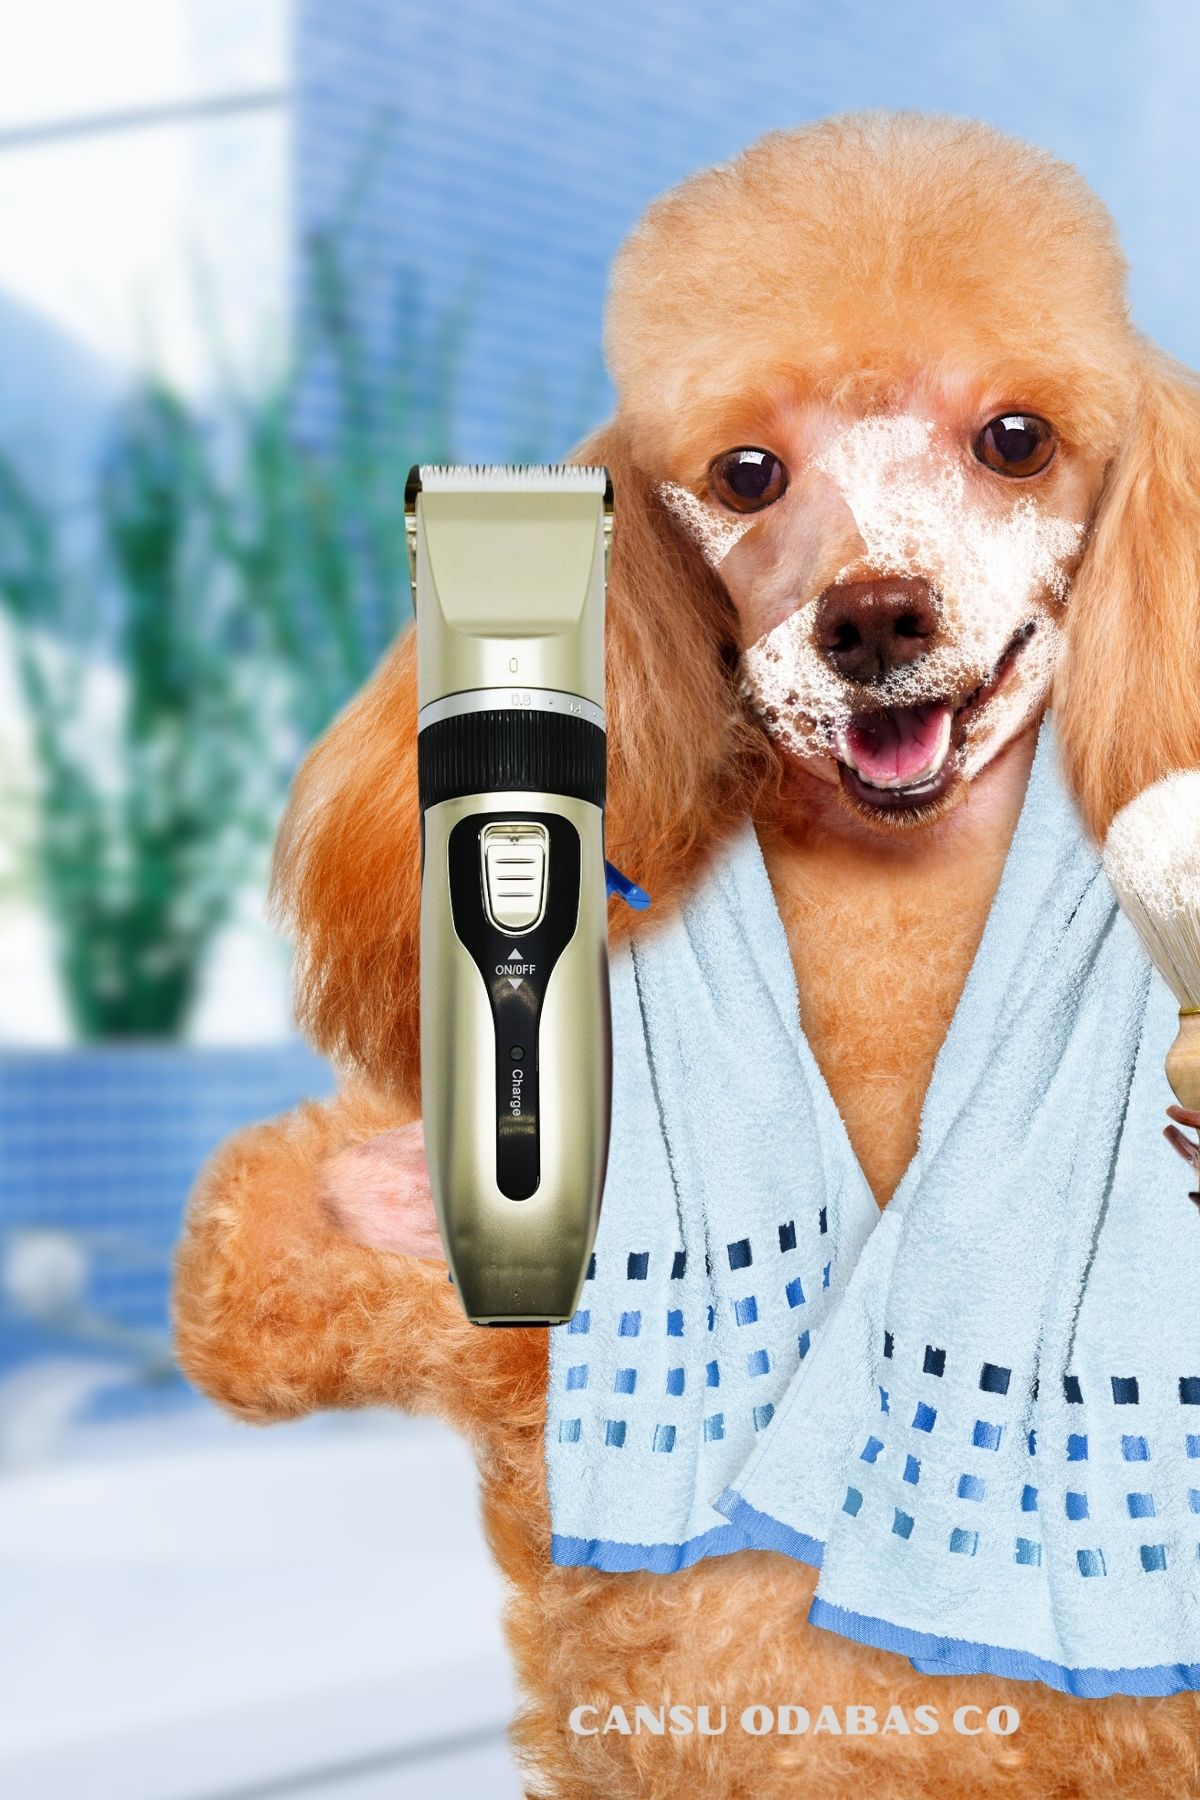 CANSU ODABAS CO Şarj edilebilir köpek kılı kesme makinesi, sessiz evcil hayvan saç kesme makinesi